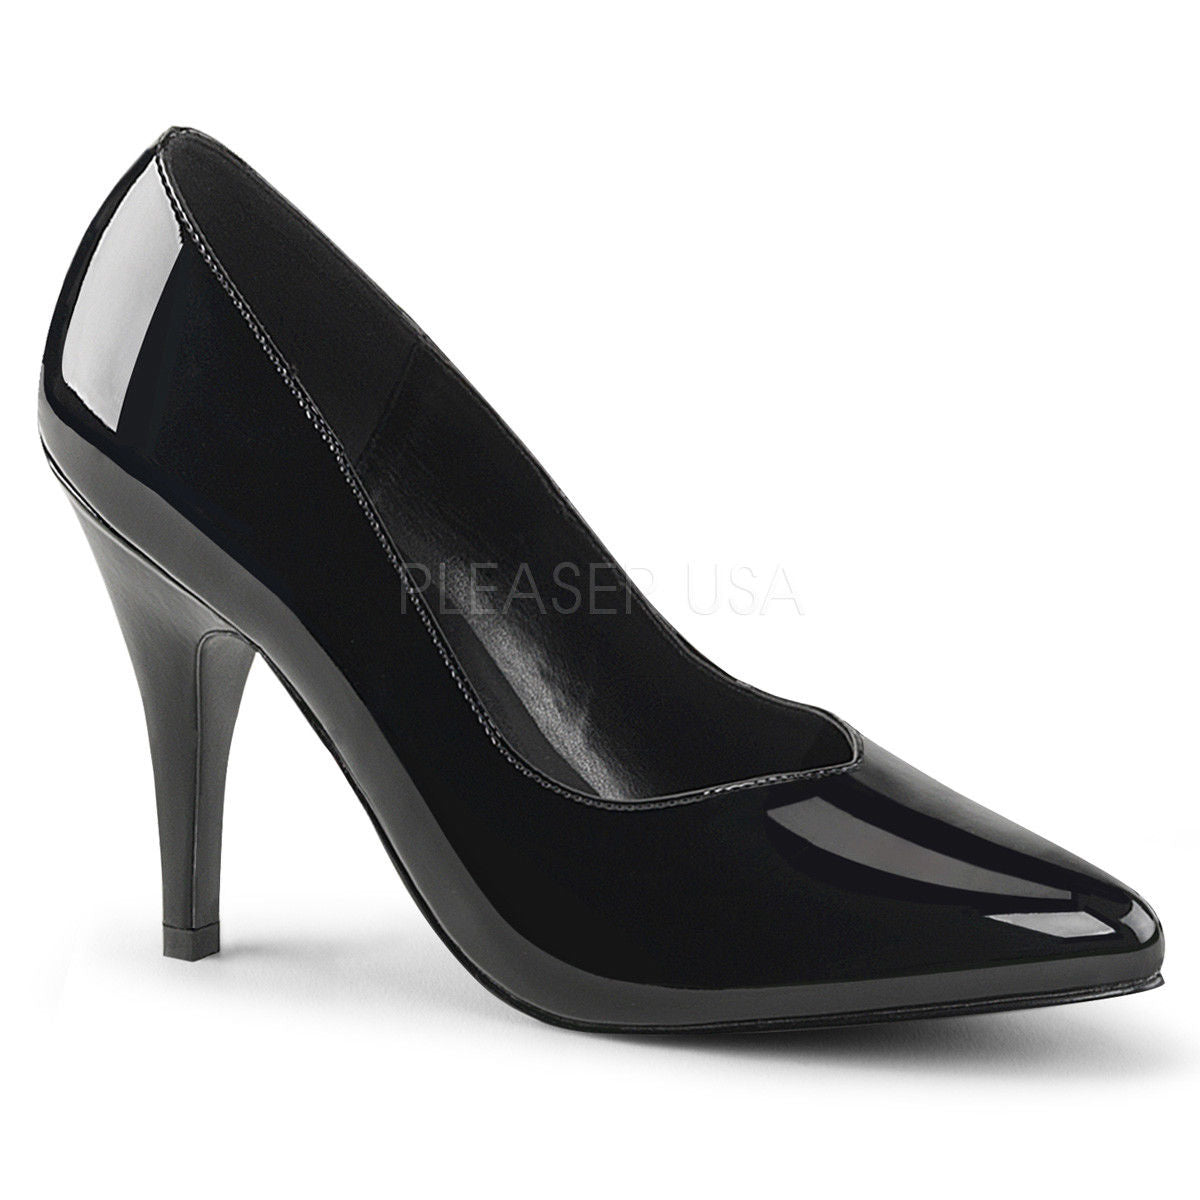 Buy Women's High Heels Online in Australia - A Shoe Addiction